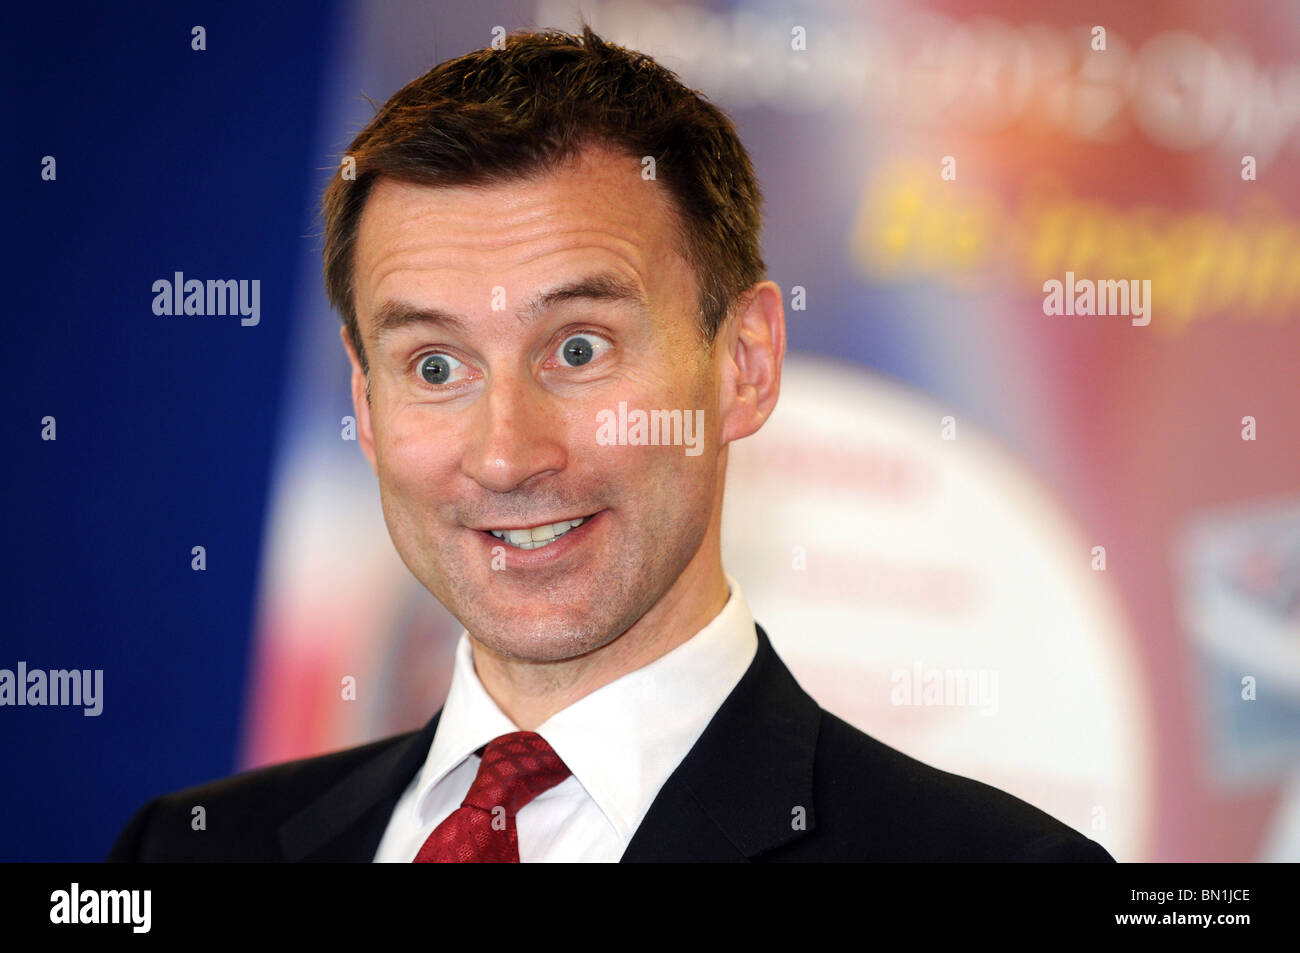 Jeremy Hunt MP politician Stock Photo